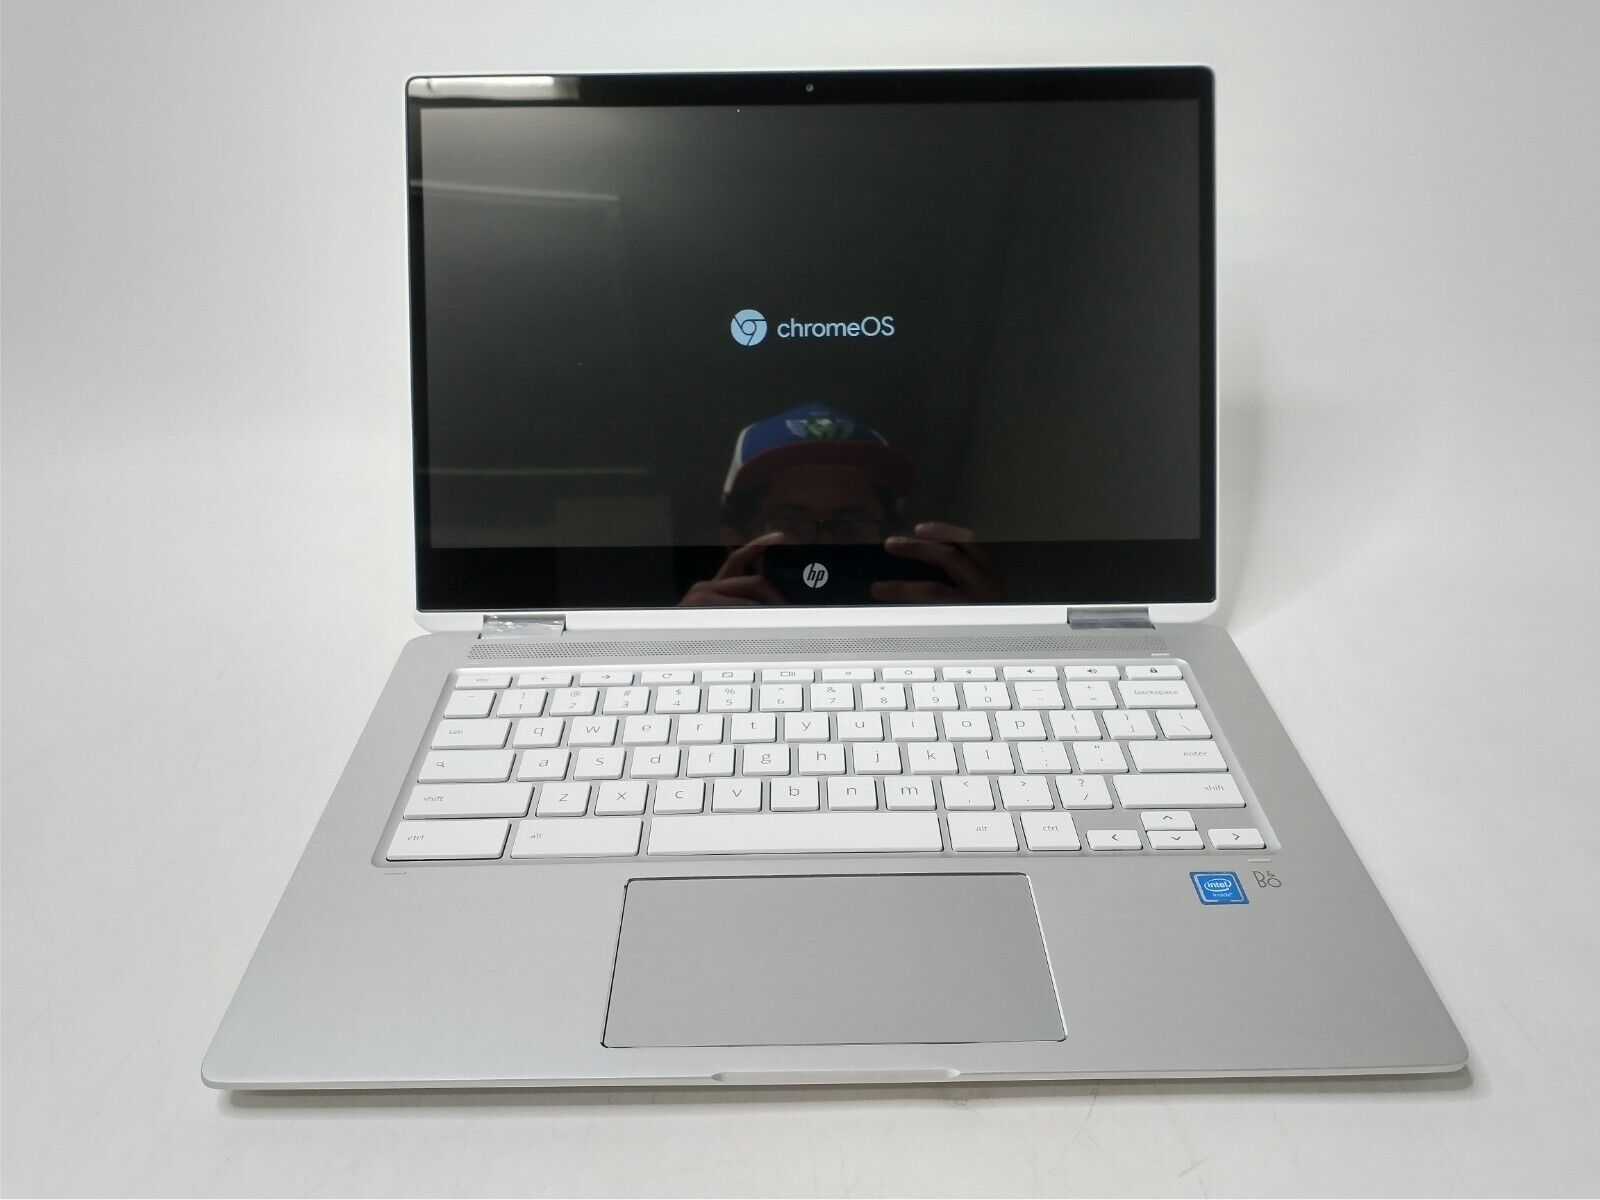 HP Chromebook x360 14b-ca0013dx, Celeron N4020 @ 1.1GHz, 4GB RAM, 32GB eMMC